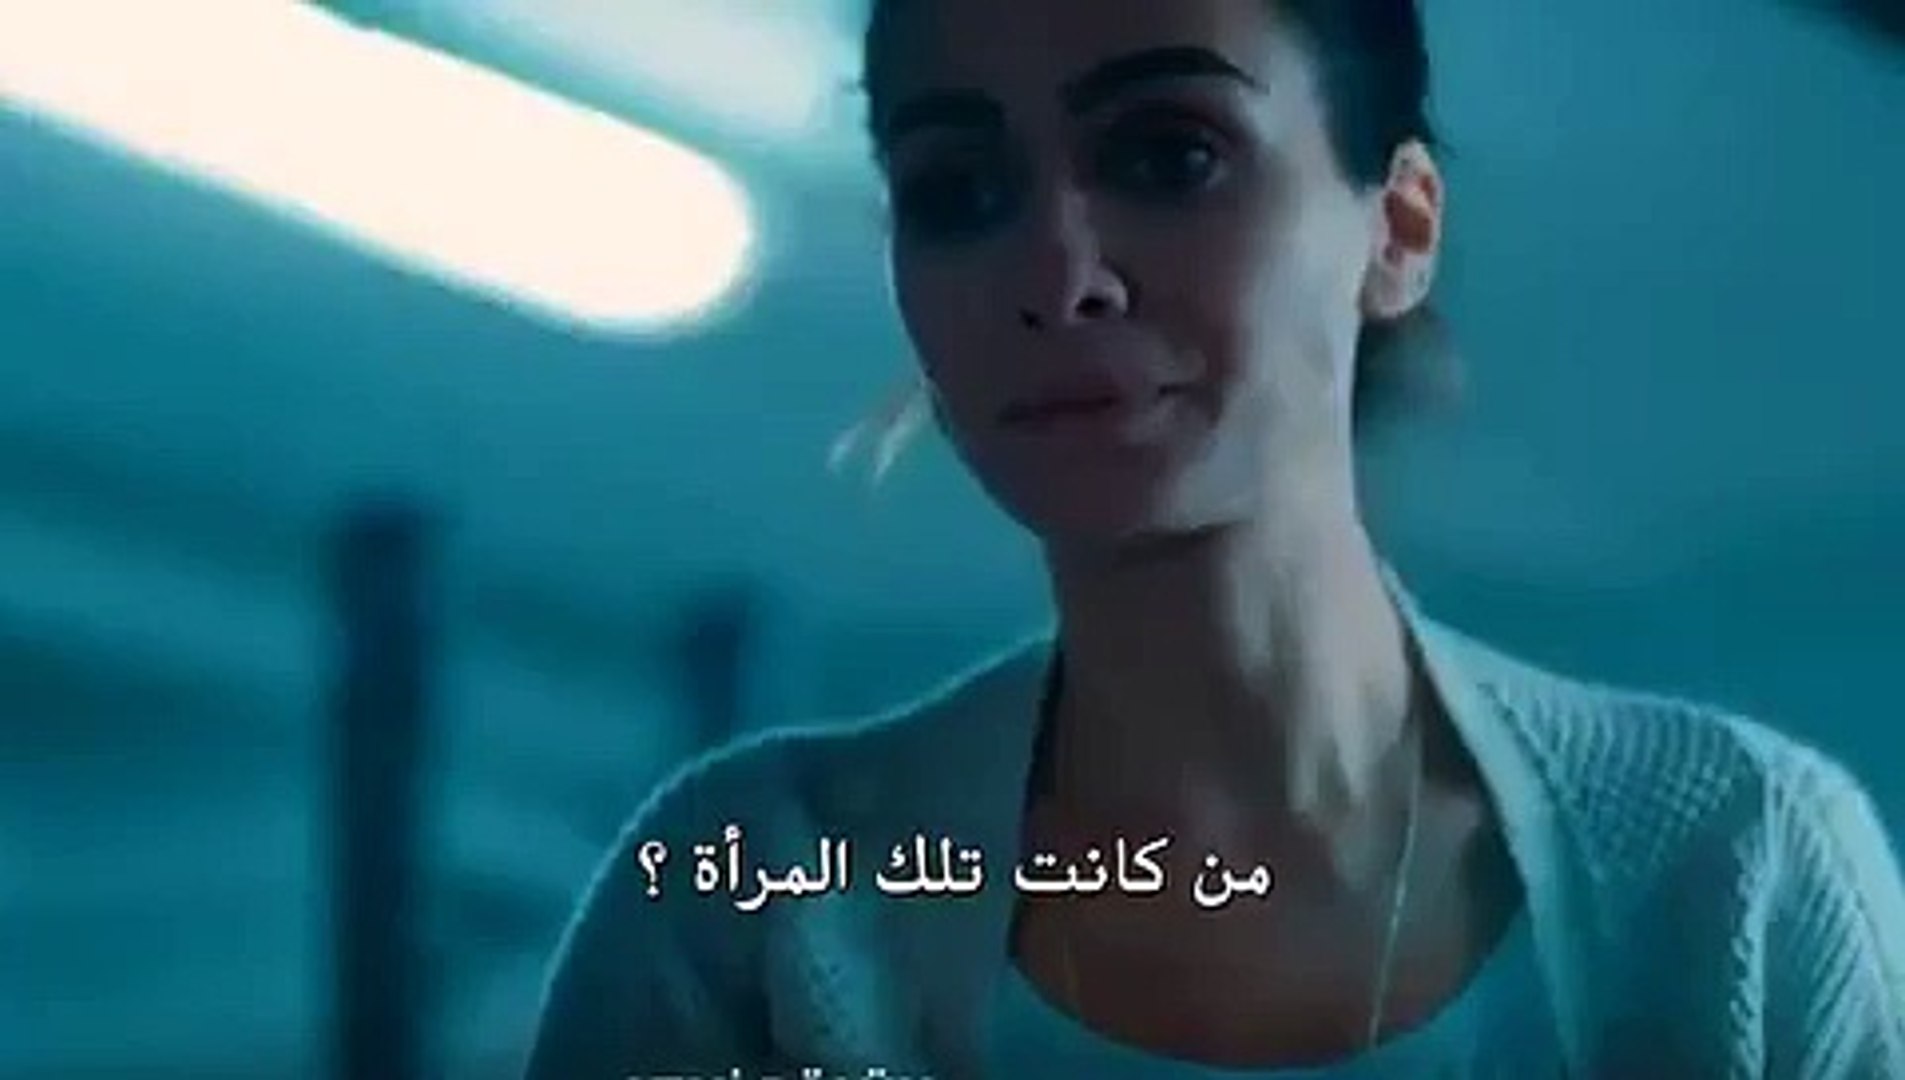 مسلسل حب أبيض واسود اعلان 2 الحلقة 5 مترجم للعربية - video Dailymotion